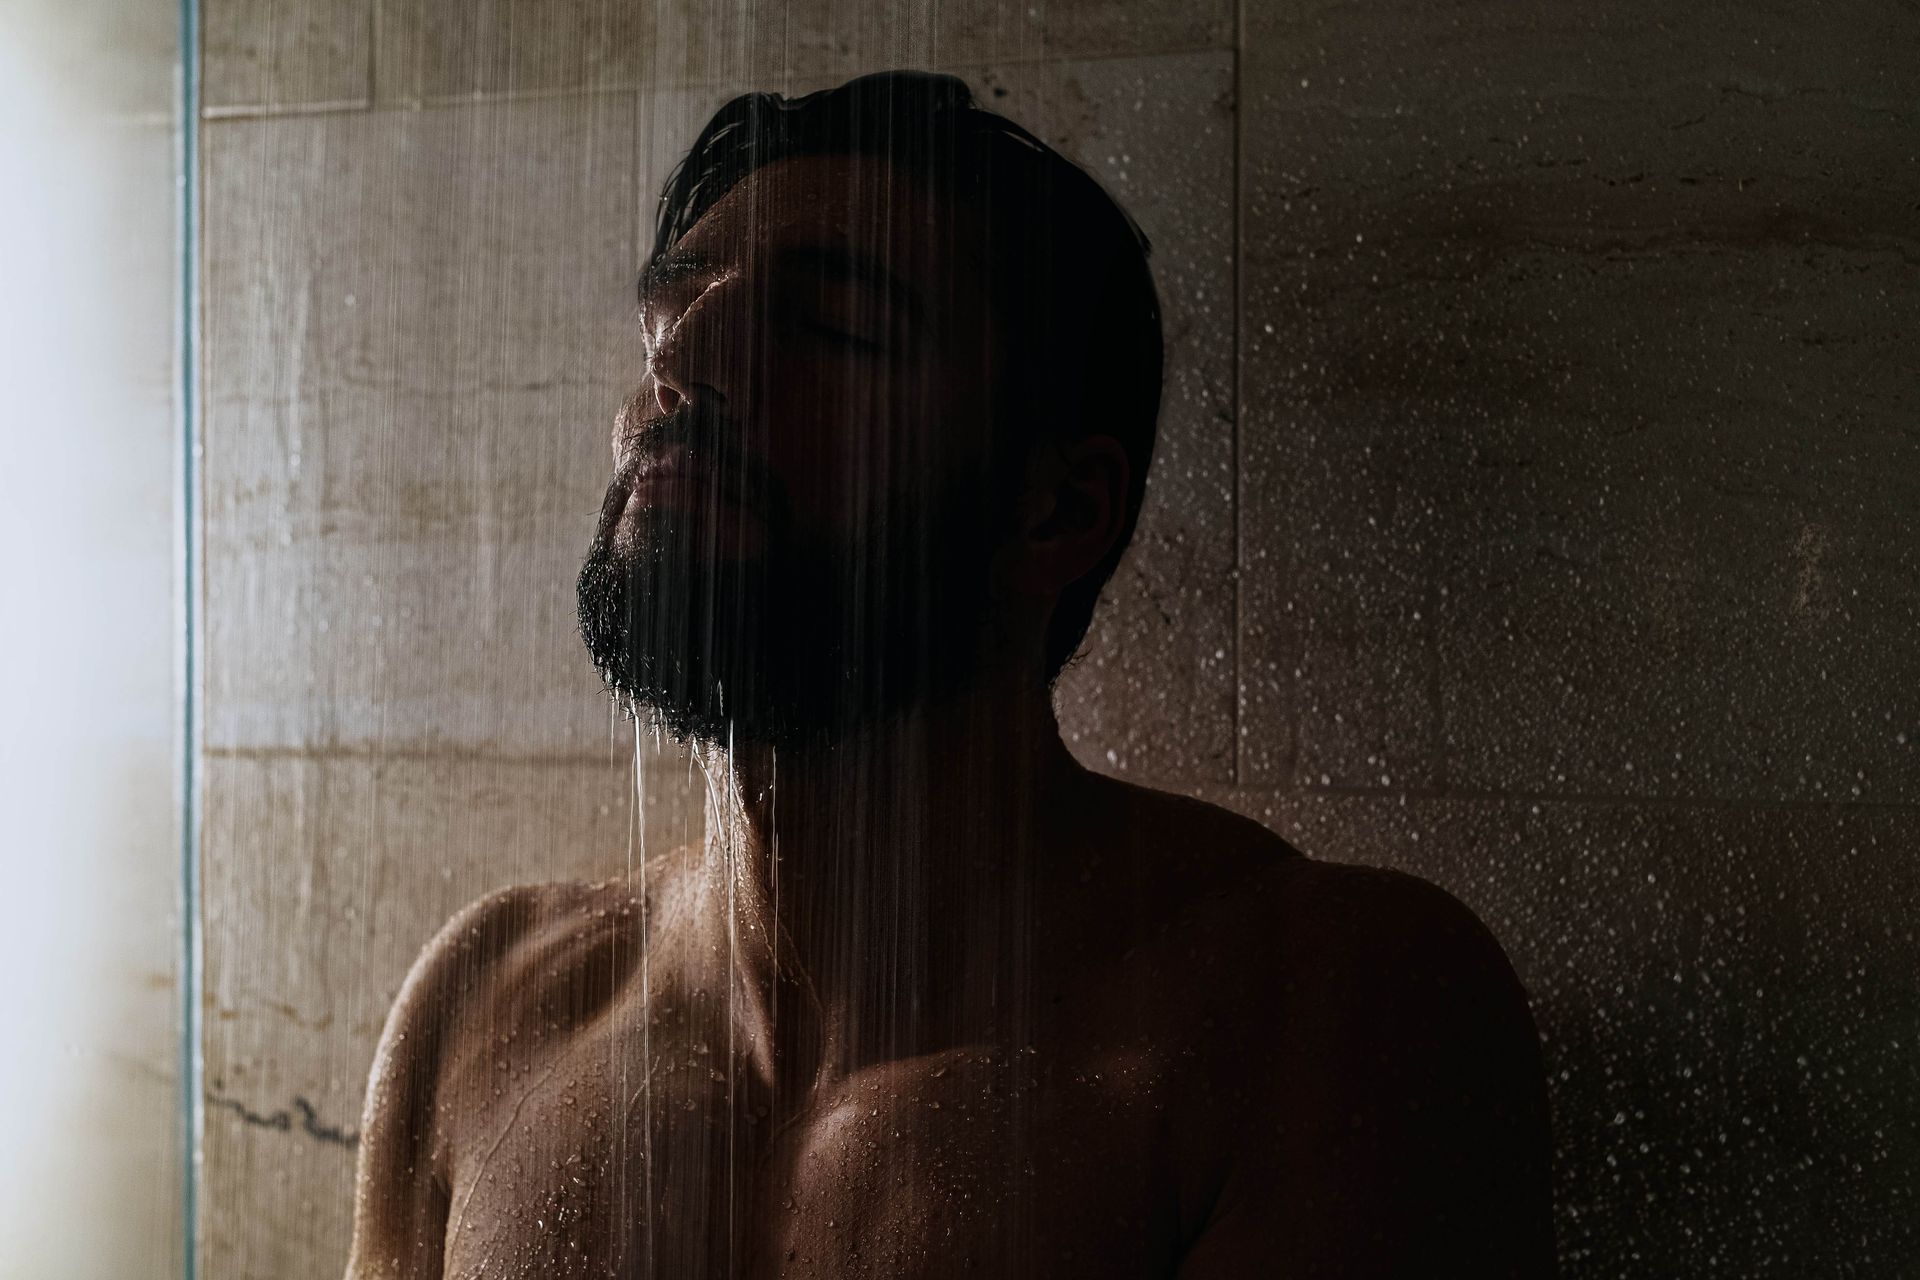 Man in shower.